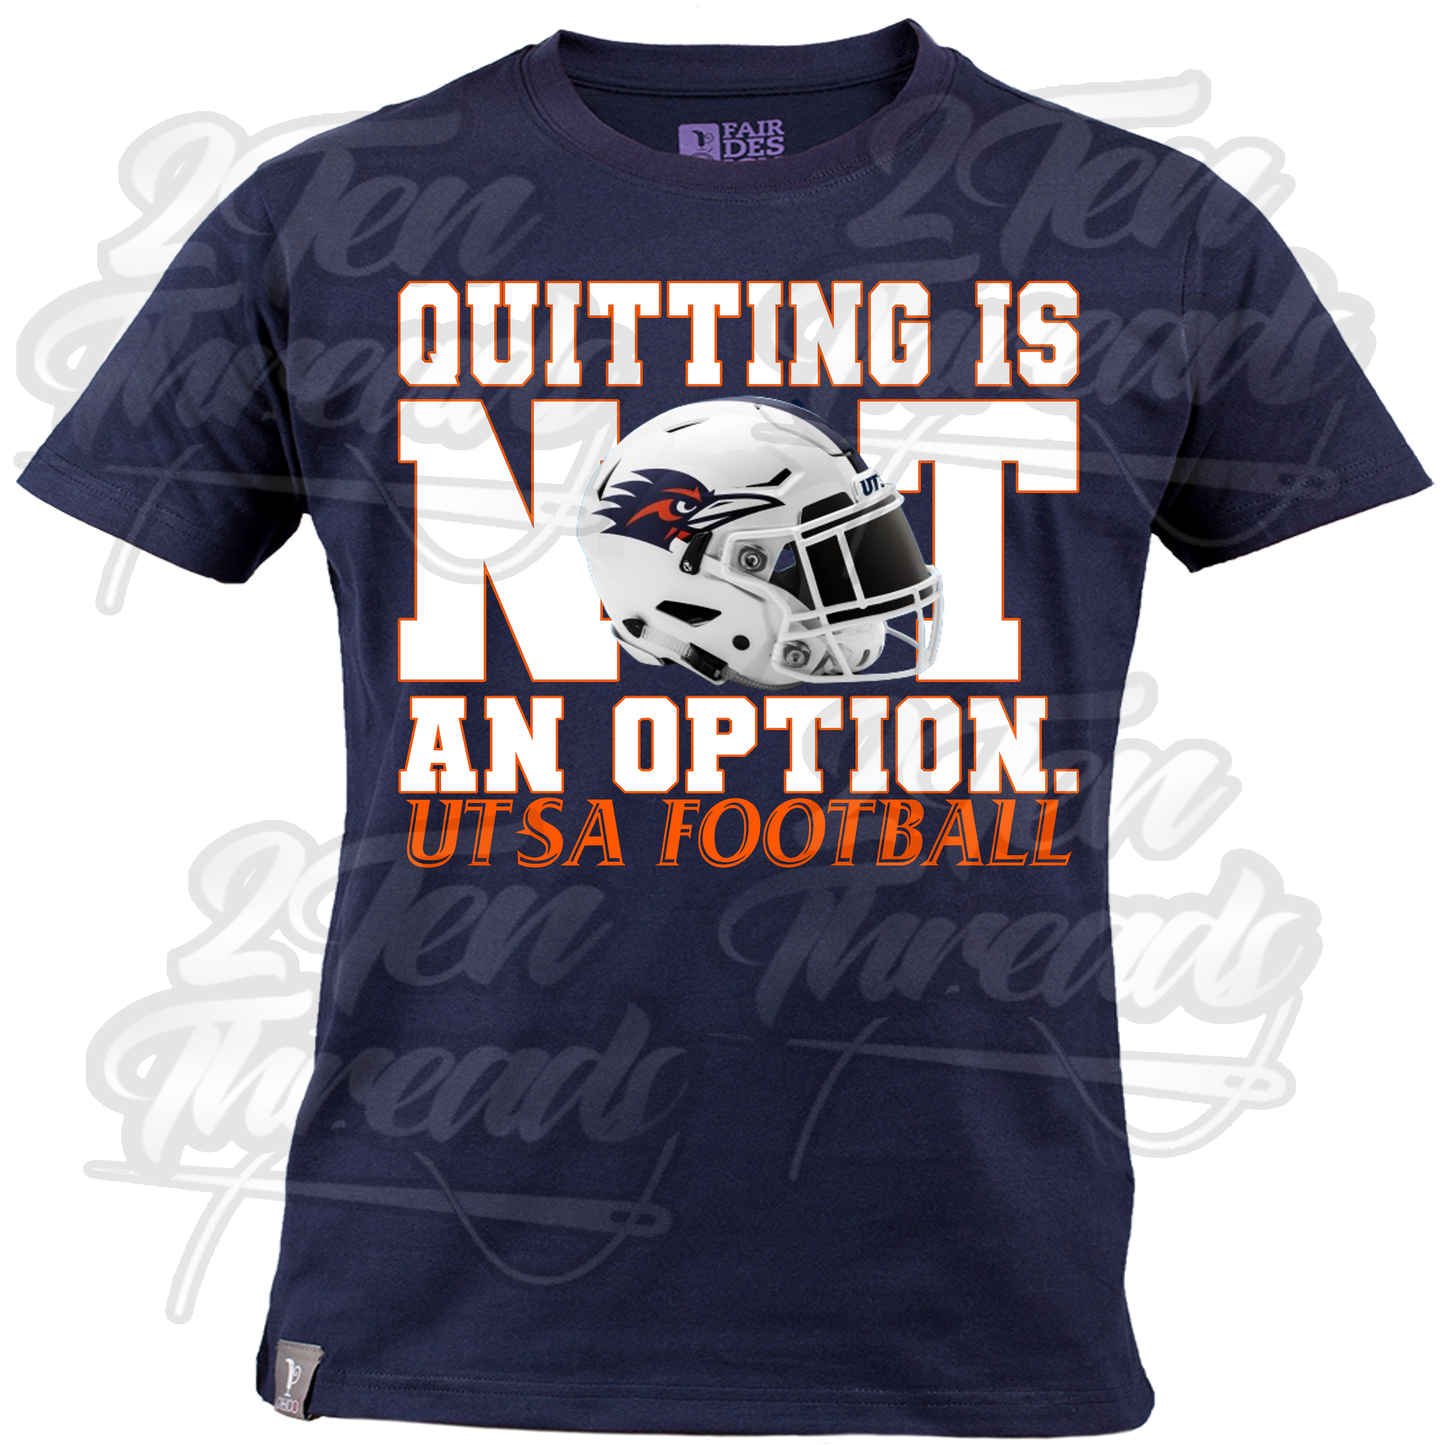 Not an Option UTSA Shirt